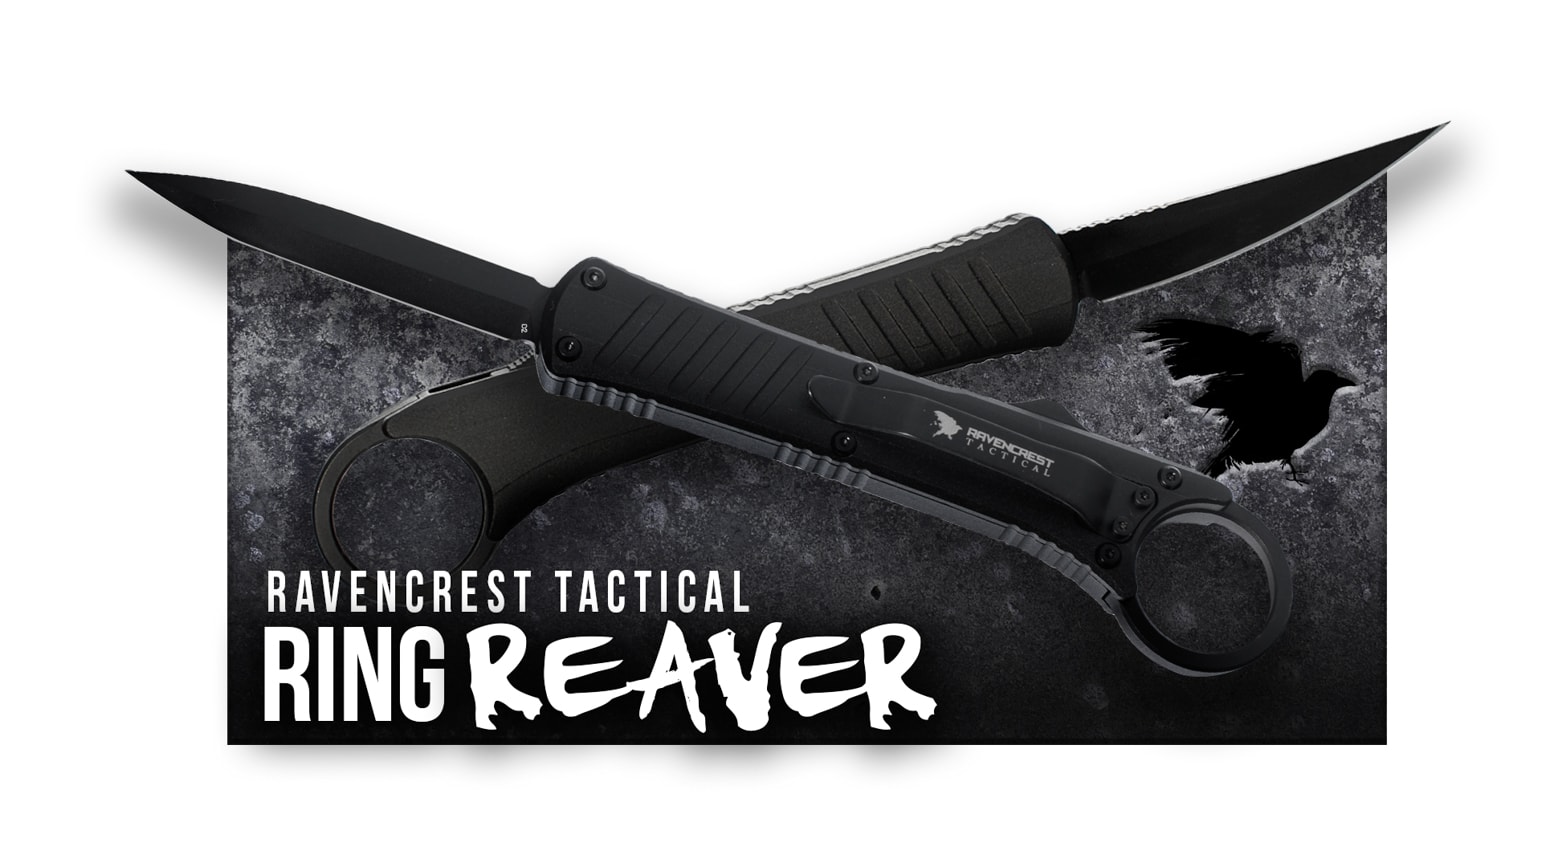 OTF Knife - Covert Reaver - RavenCrest Tactical